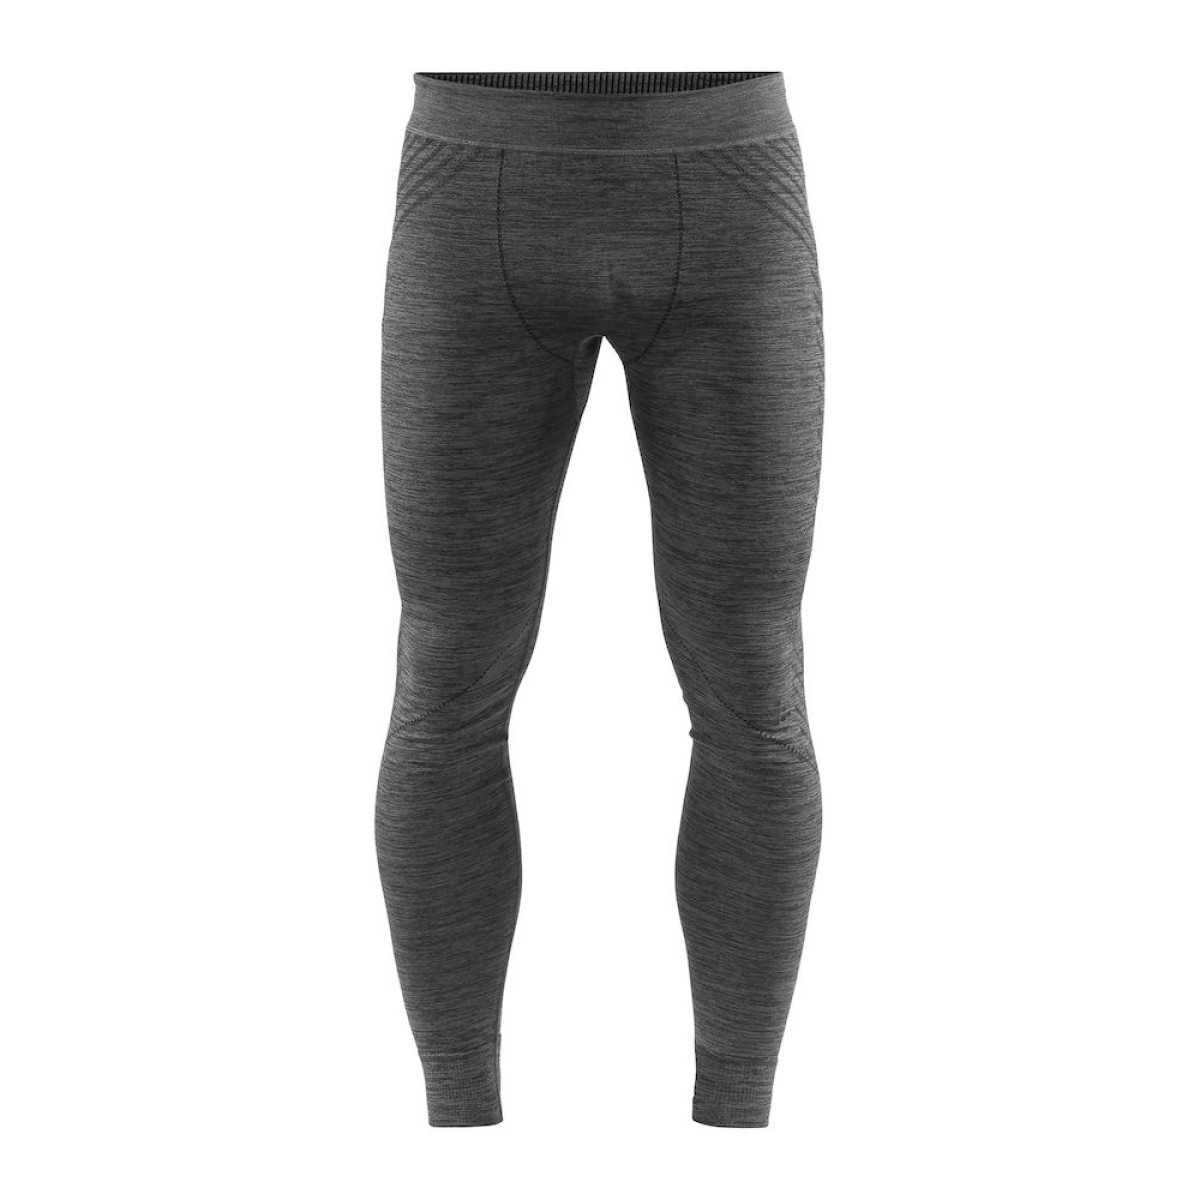 Термoбельо мъжко панталон Fuseknit Comfort black melang CRAFT - изглед 1